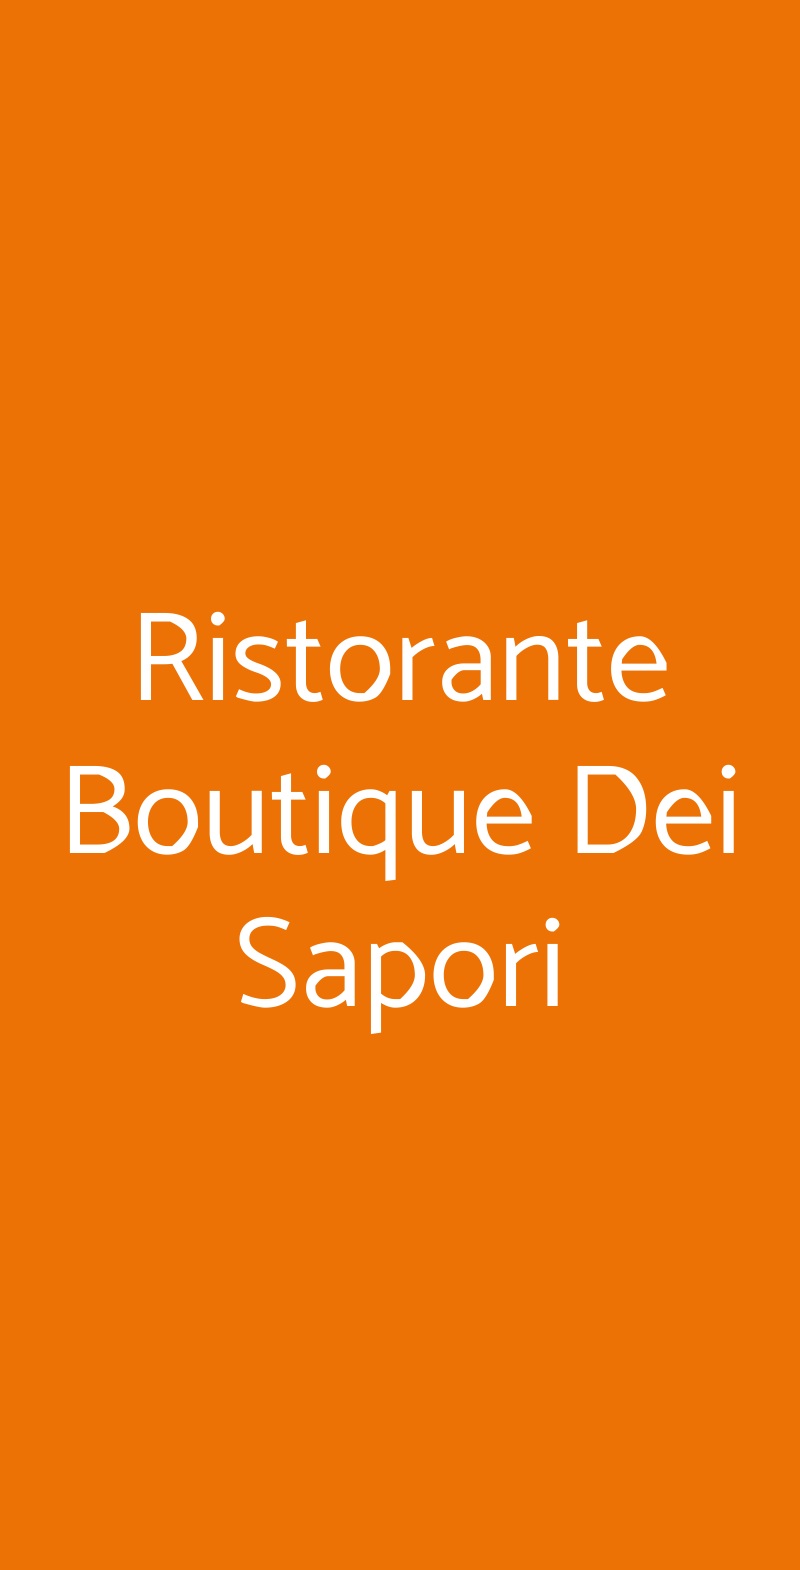 Ristorante Boutique Dei Sapori Salerno menù 1 pagina